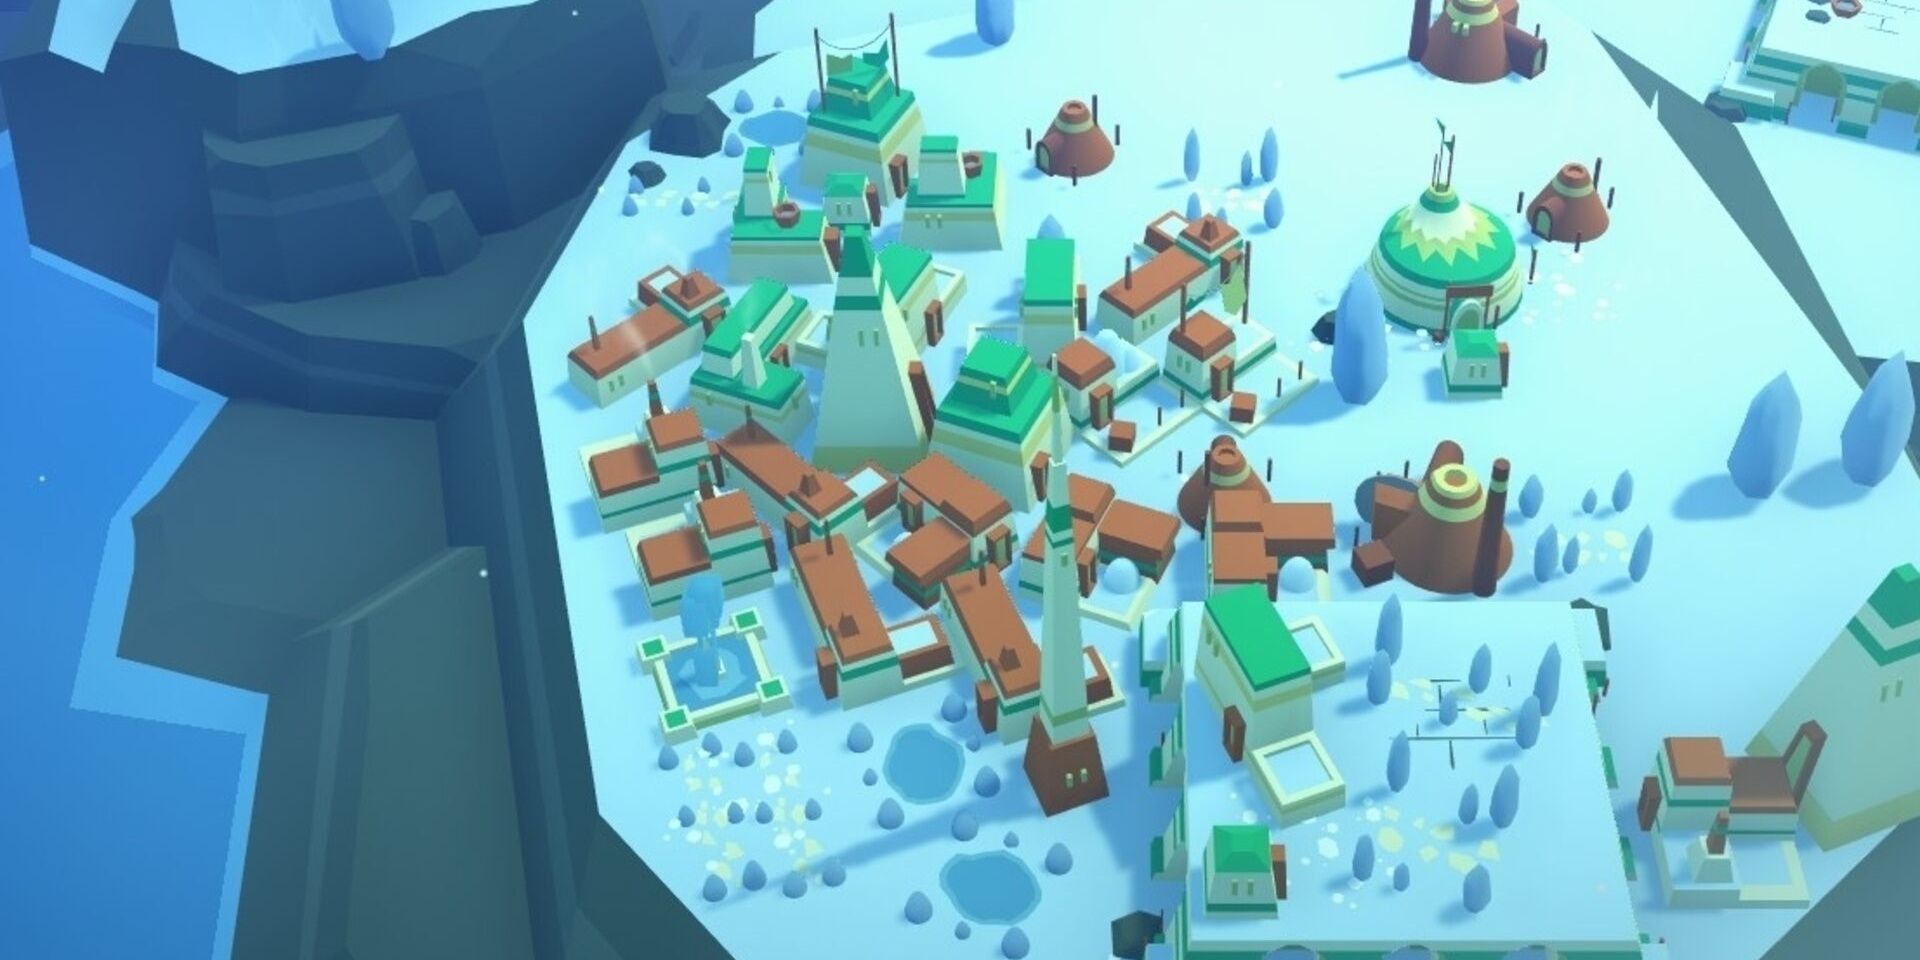 Snowy city in Islanders